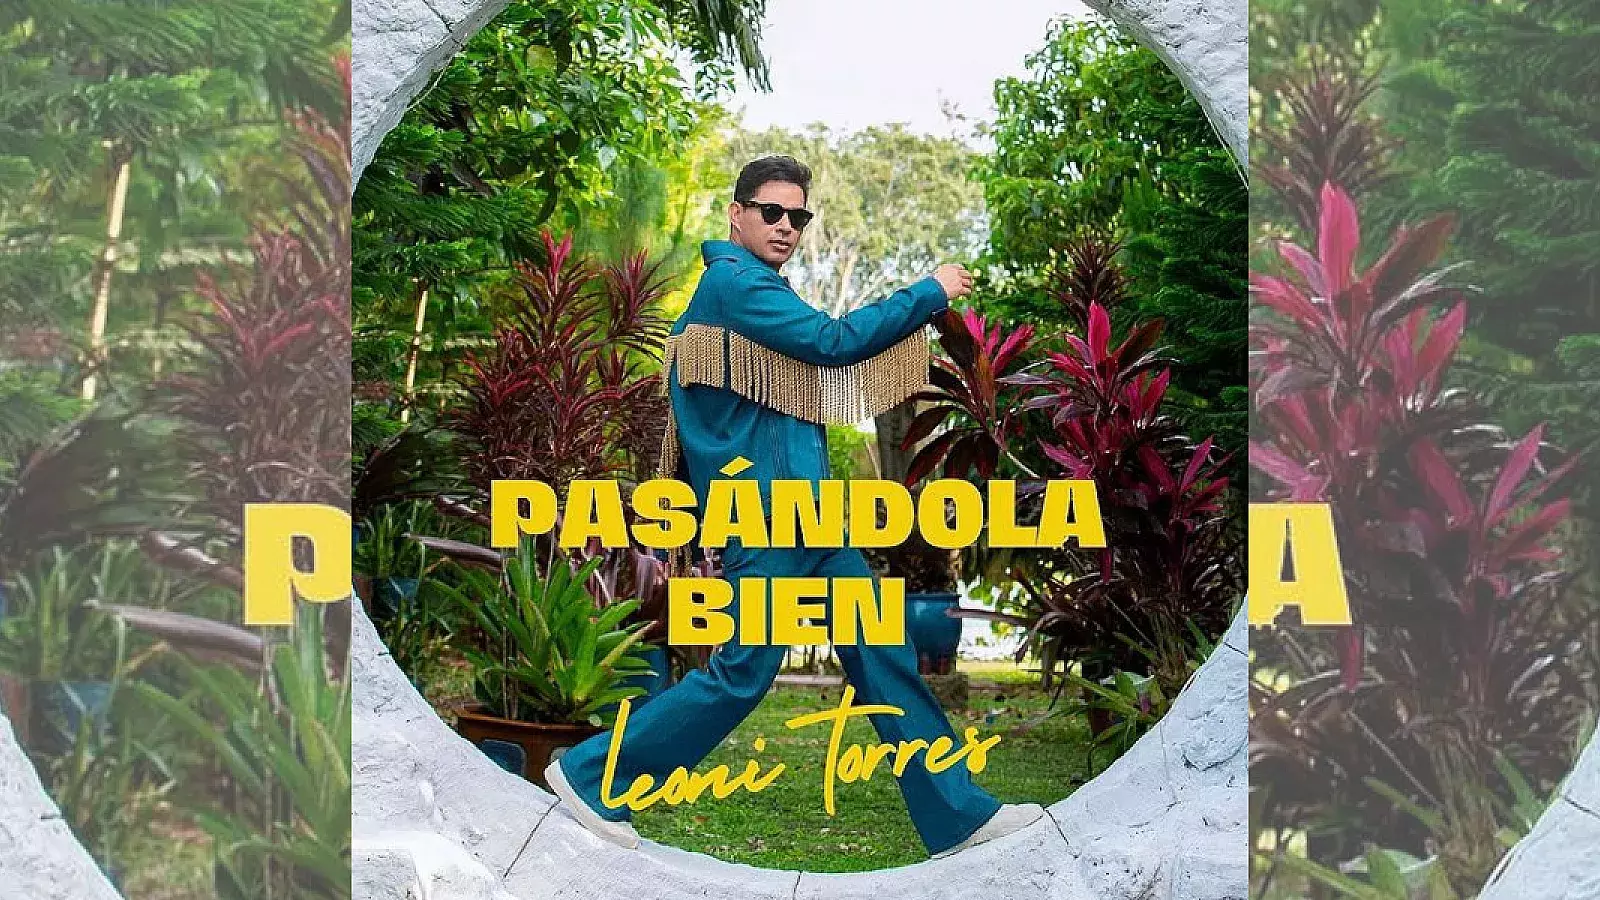 Leoni Torres estrena “Pasándola bien”, su nuevo disco